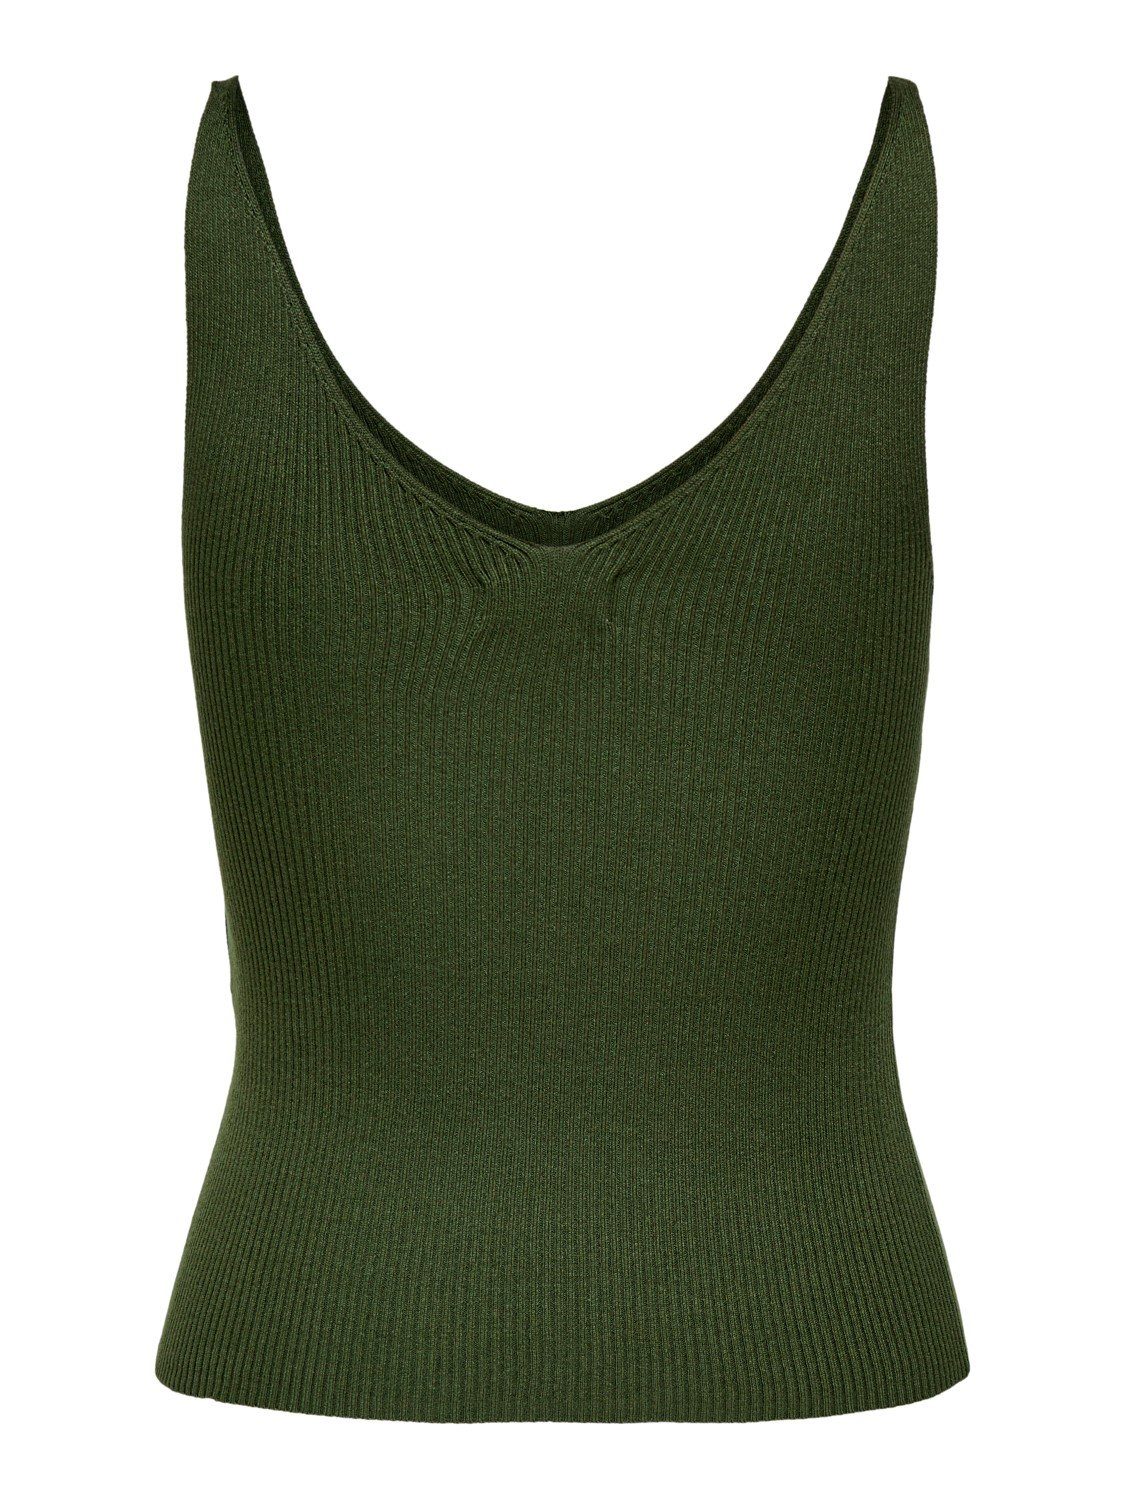 Ausschnitt Pullover Oberteil (1-tlg) Grün Shirt JACQUELINE JDYNANNA 3554 Top YONG de Shirttop Tank V-neck in